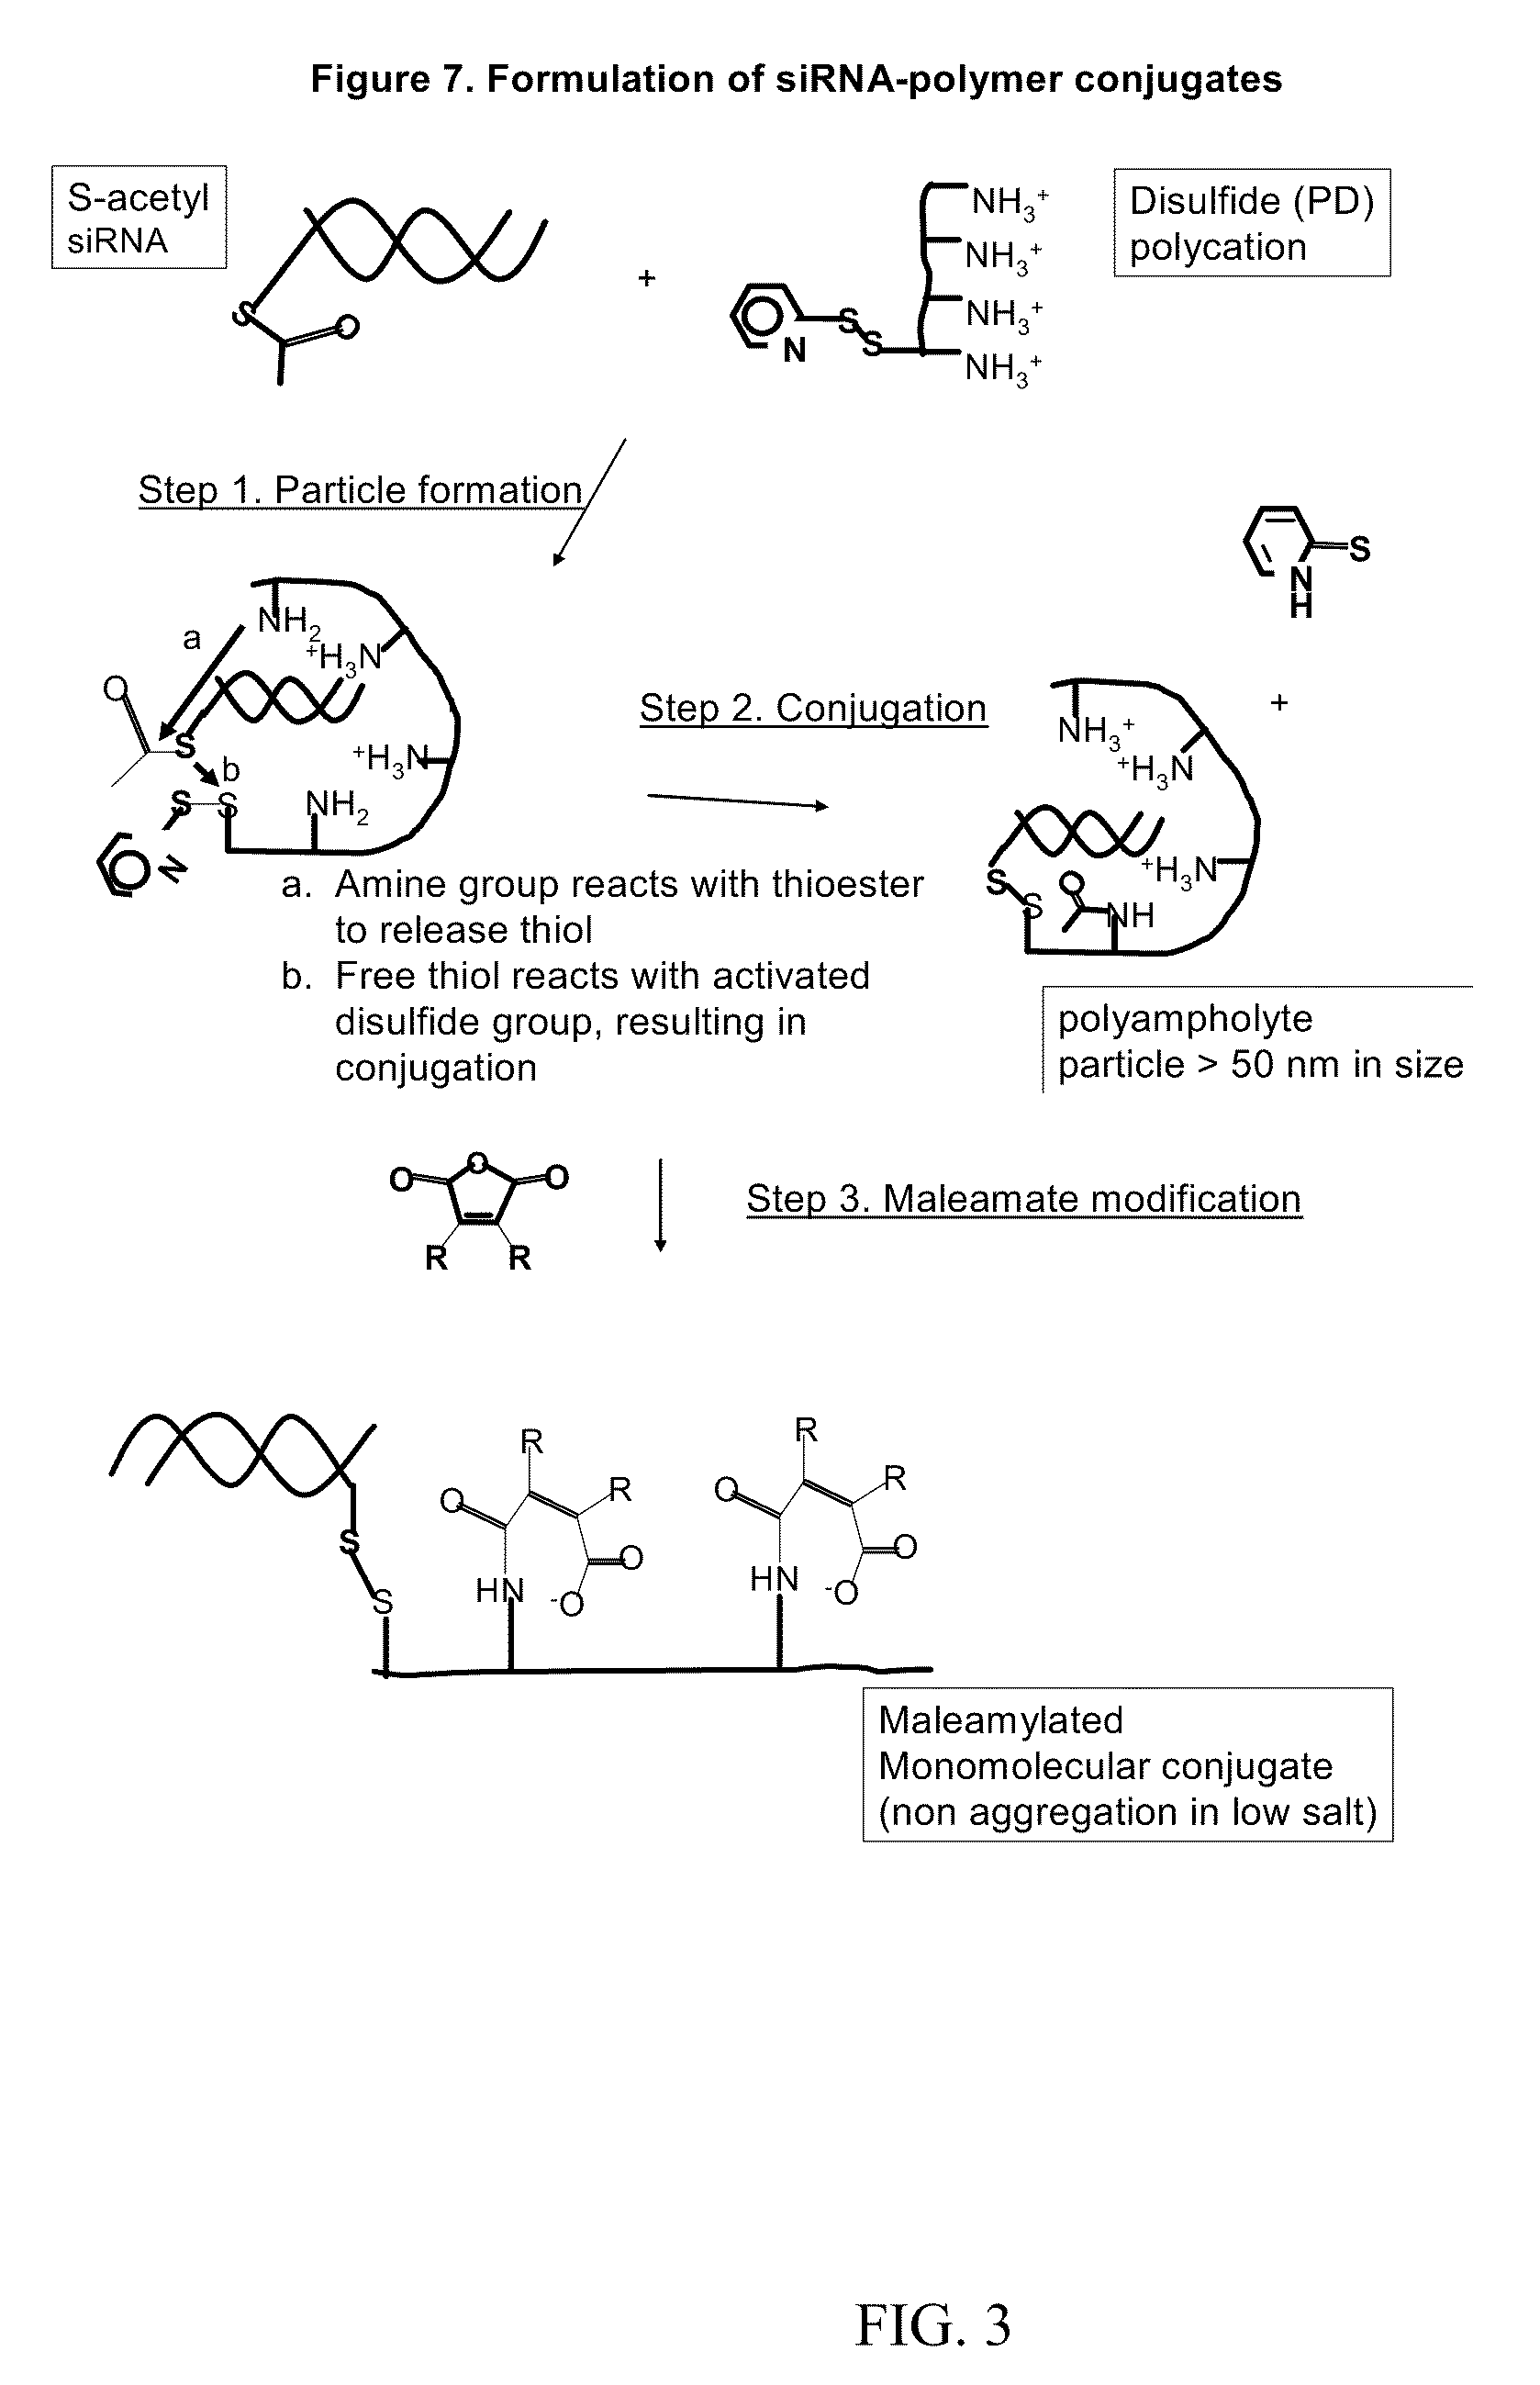 Endosomolytic poly(vinyl ether) polymers